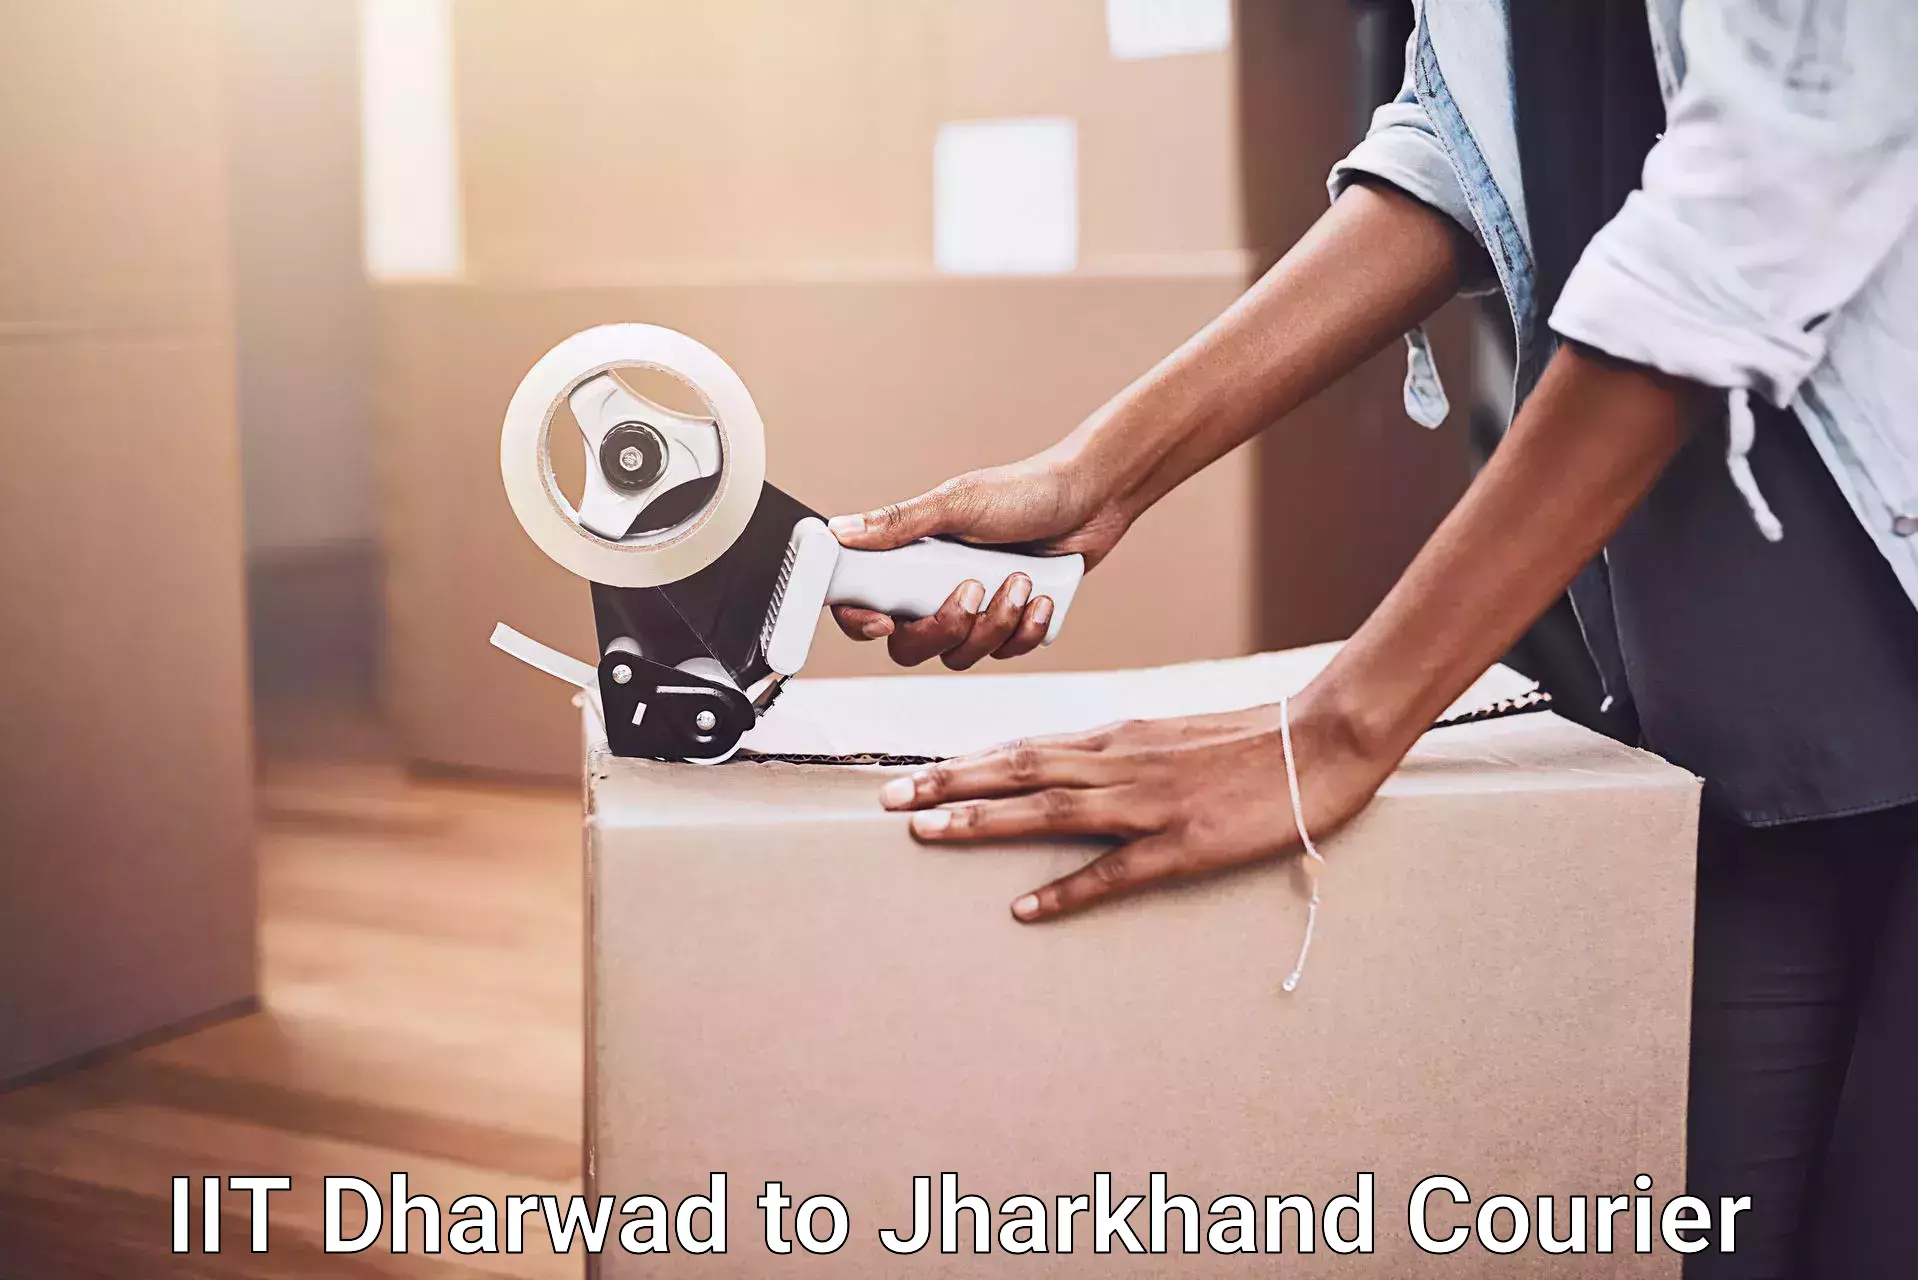 Efficient moving company IIT Dharwad to Sahibganj